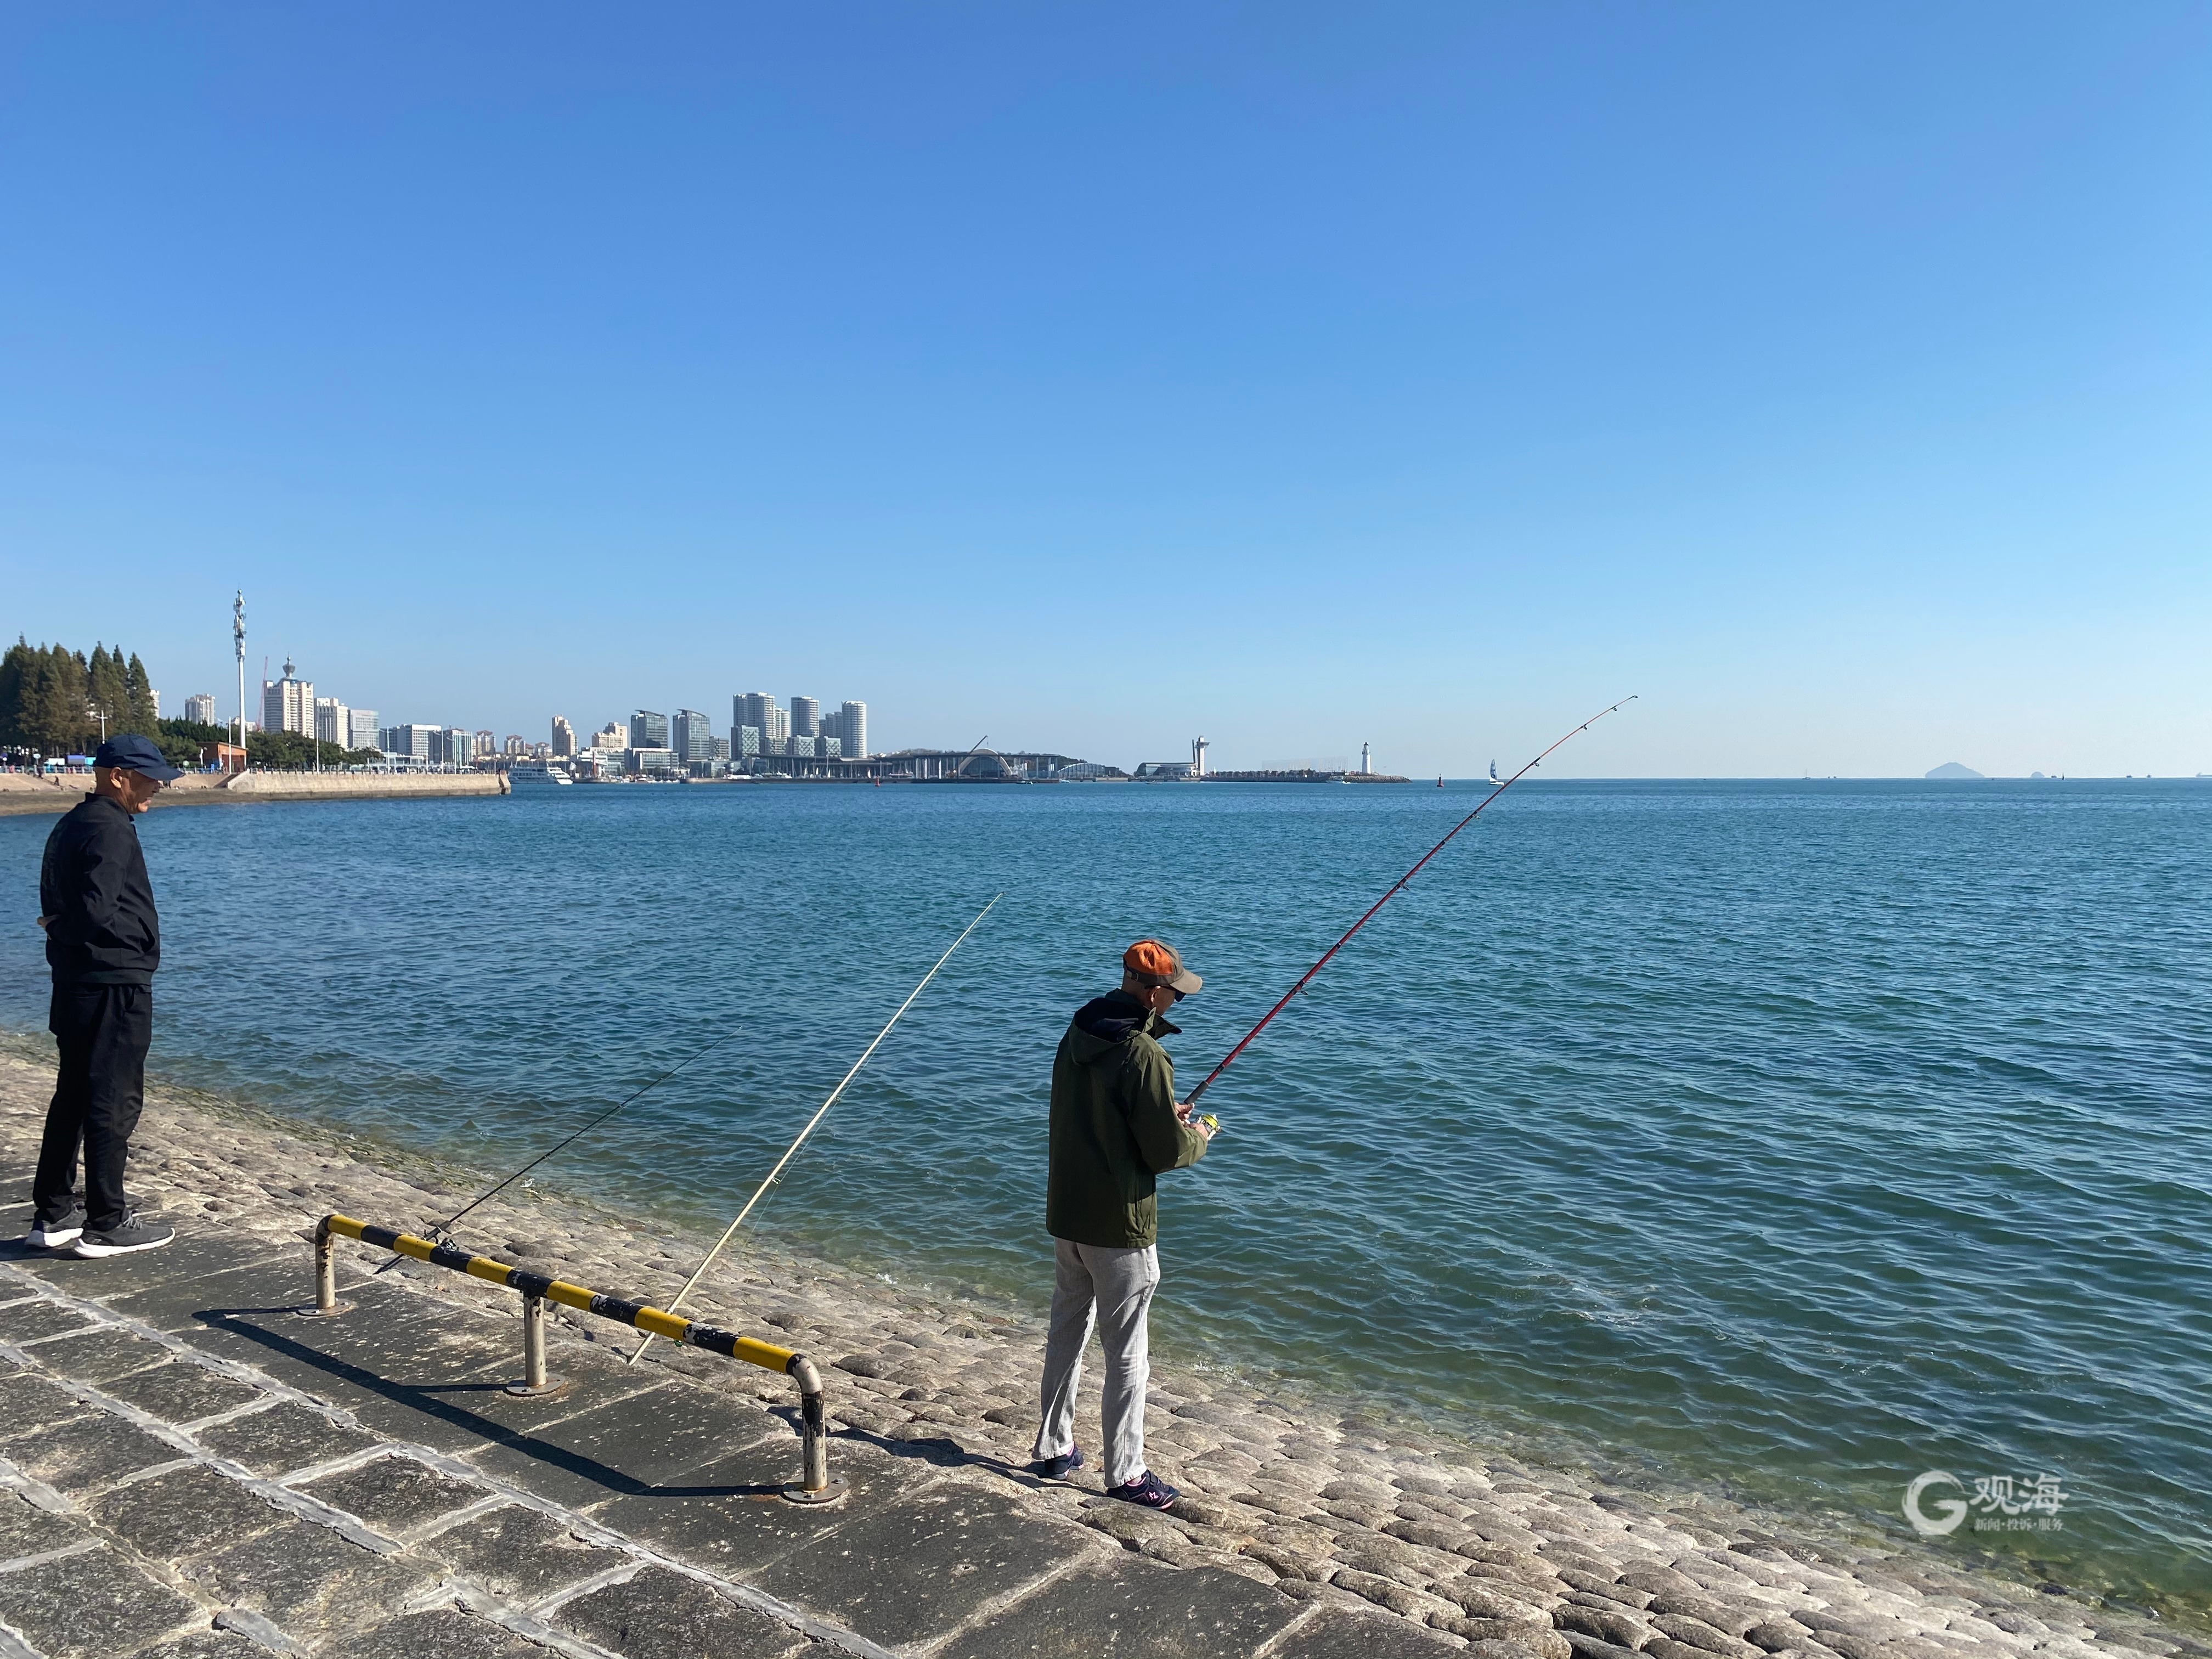 在青岛,像冷先生这样痴迷于钓鱼的人不在少数——海上,岸边,河畔湖畔